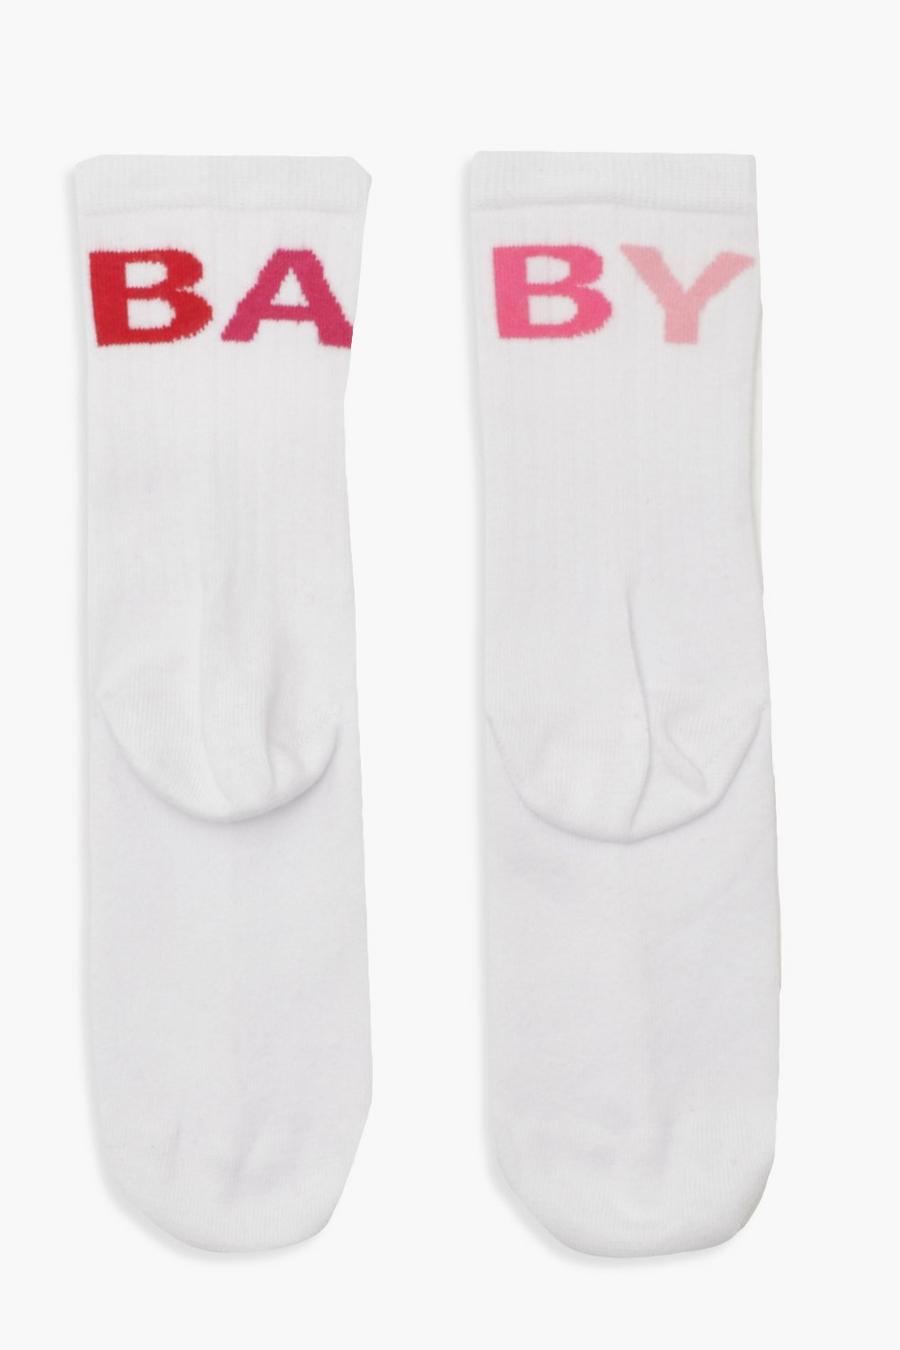 Calcetines deportivos con eslogan Baby degradado image number 1